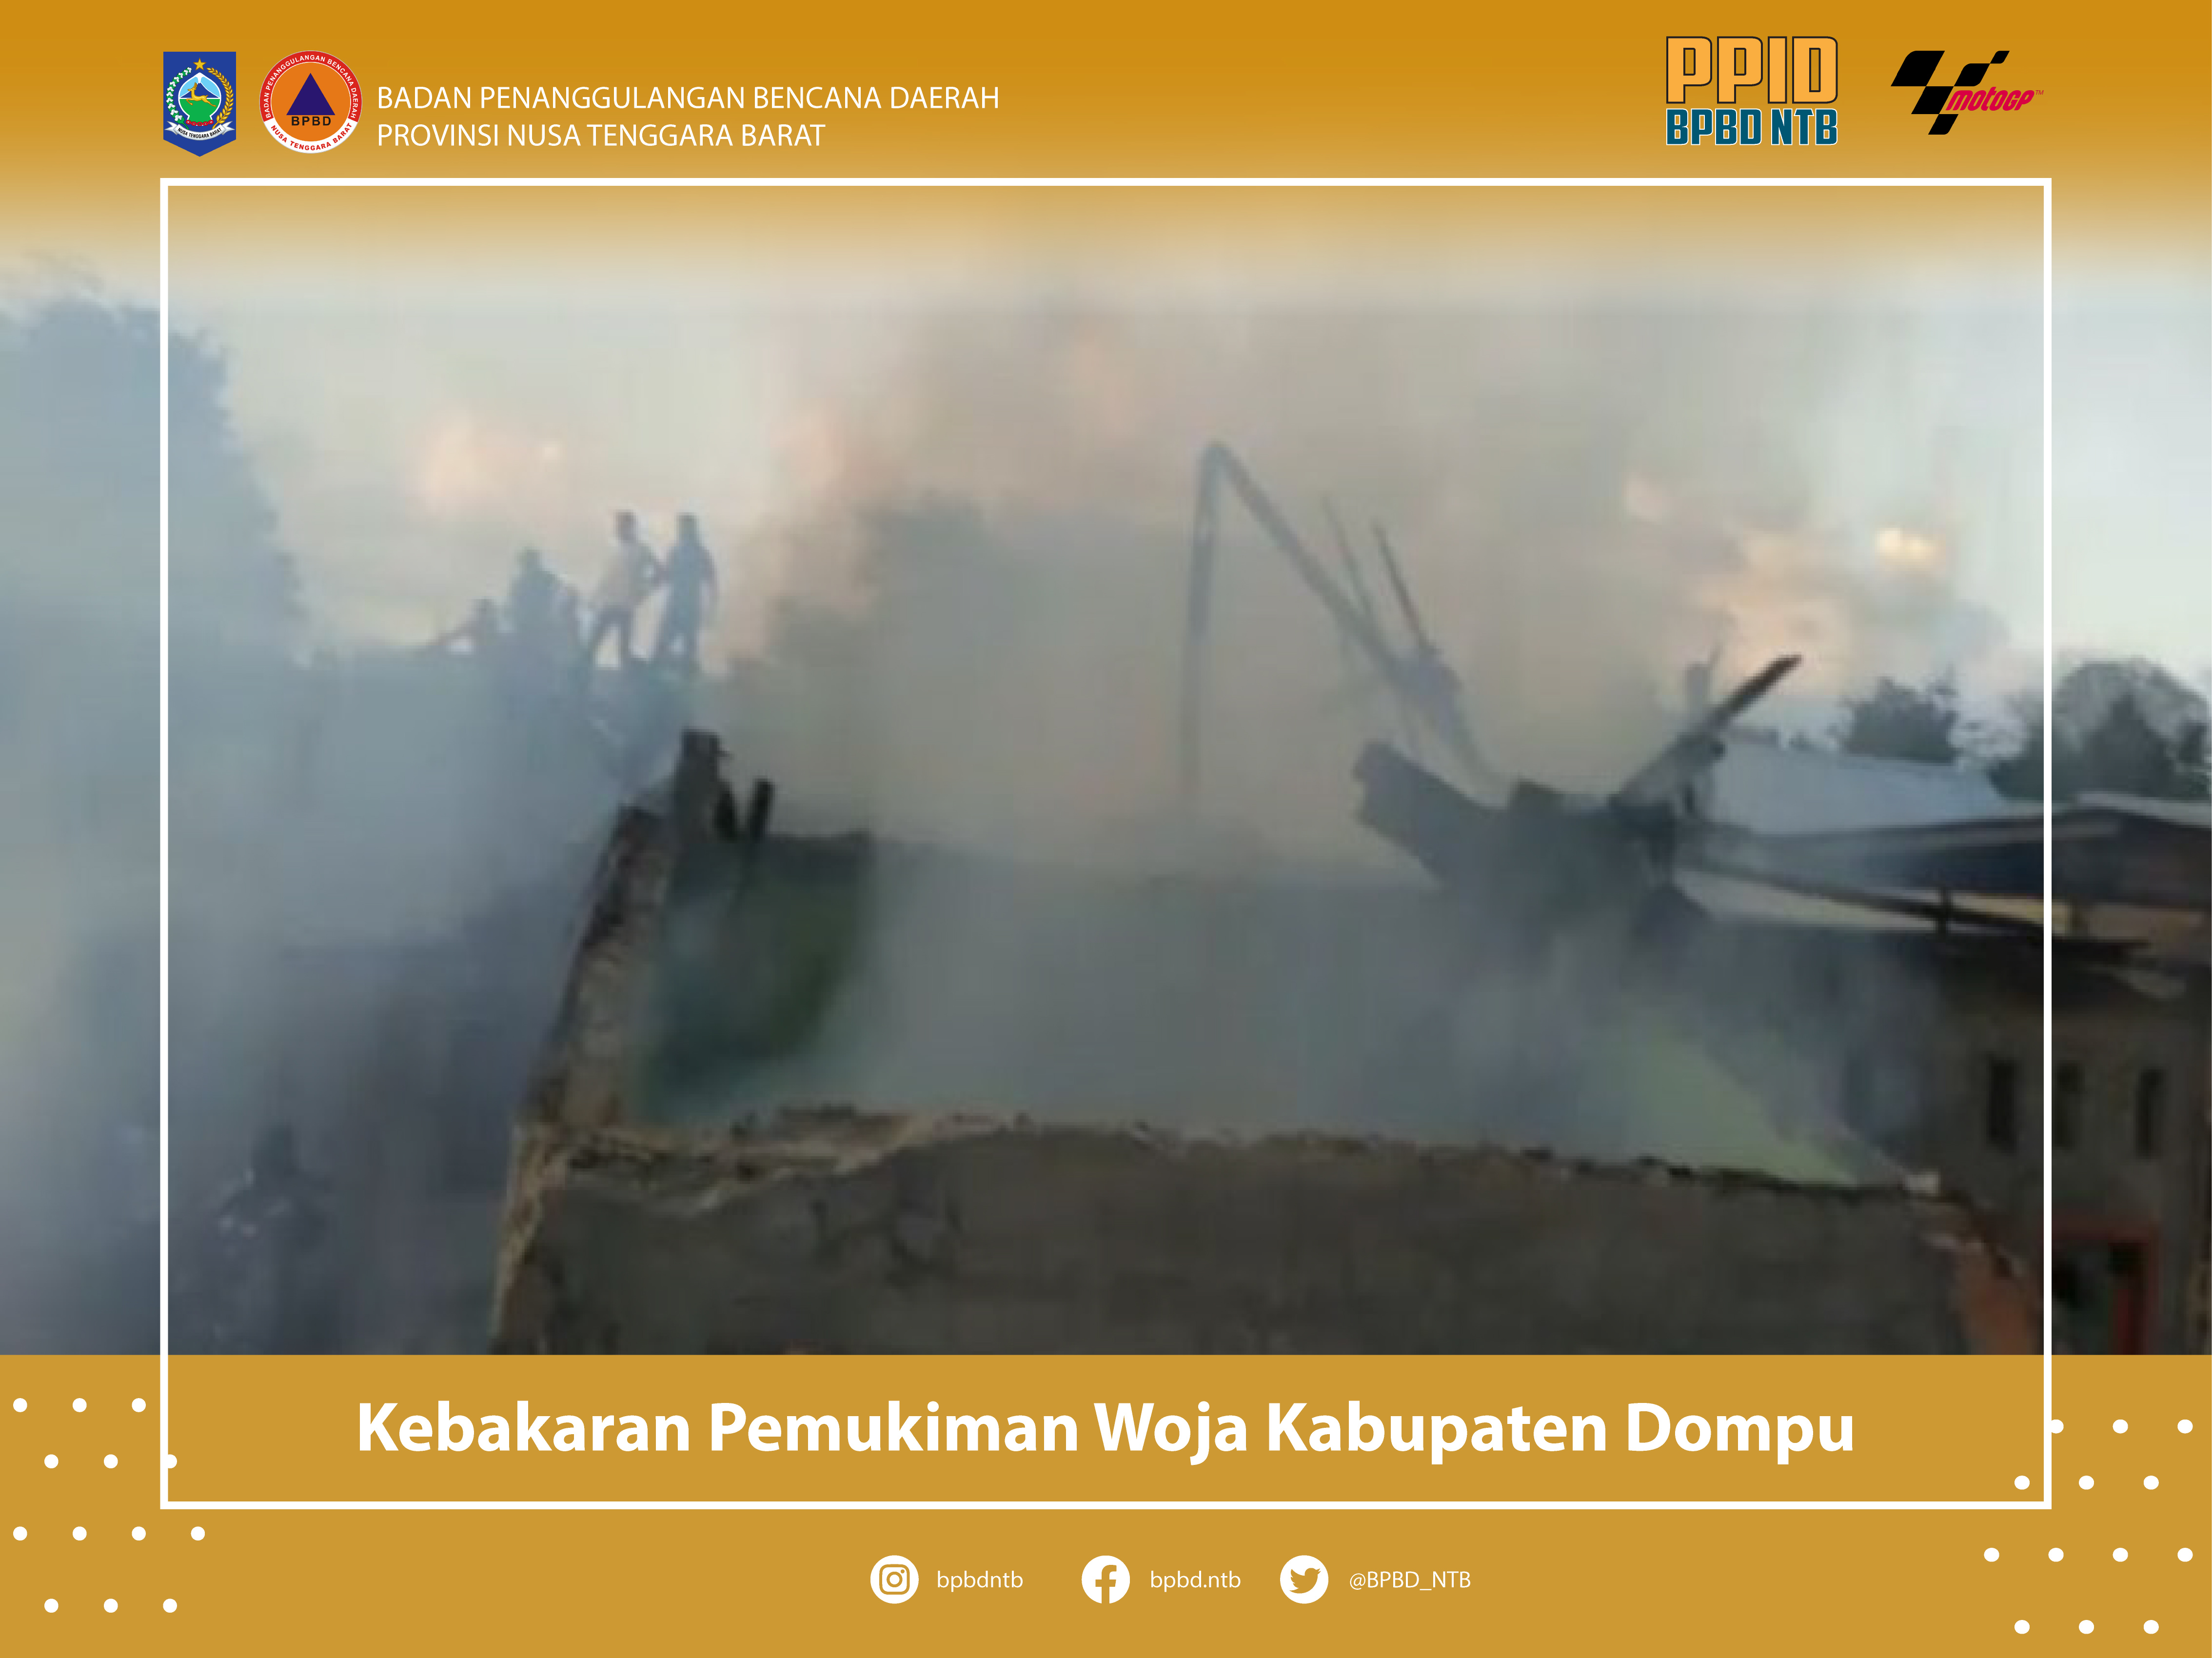 Laporan Kejadian Kebakaran Pemukiman Woja Kabupaten Dompu